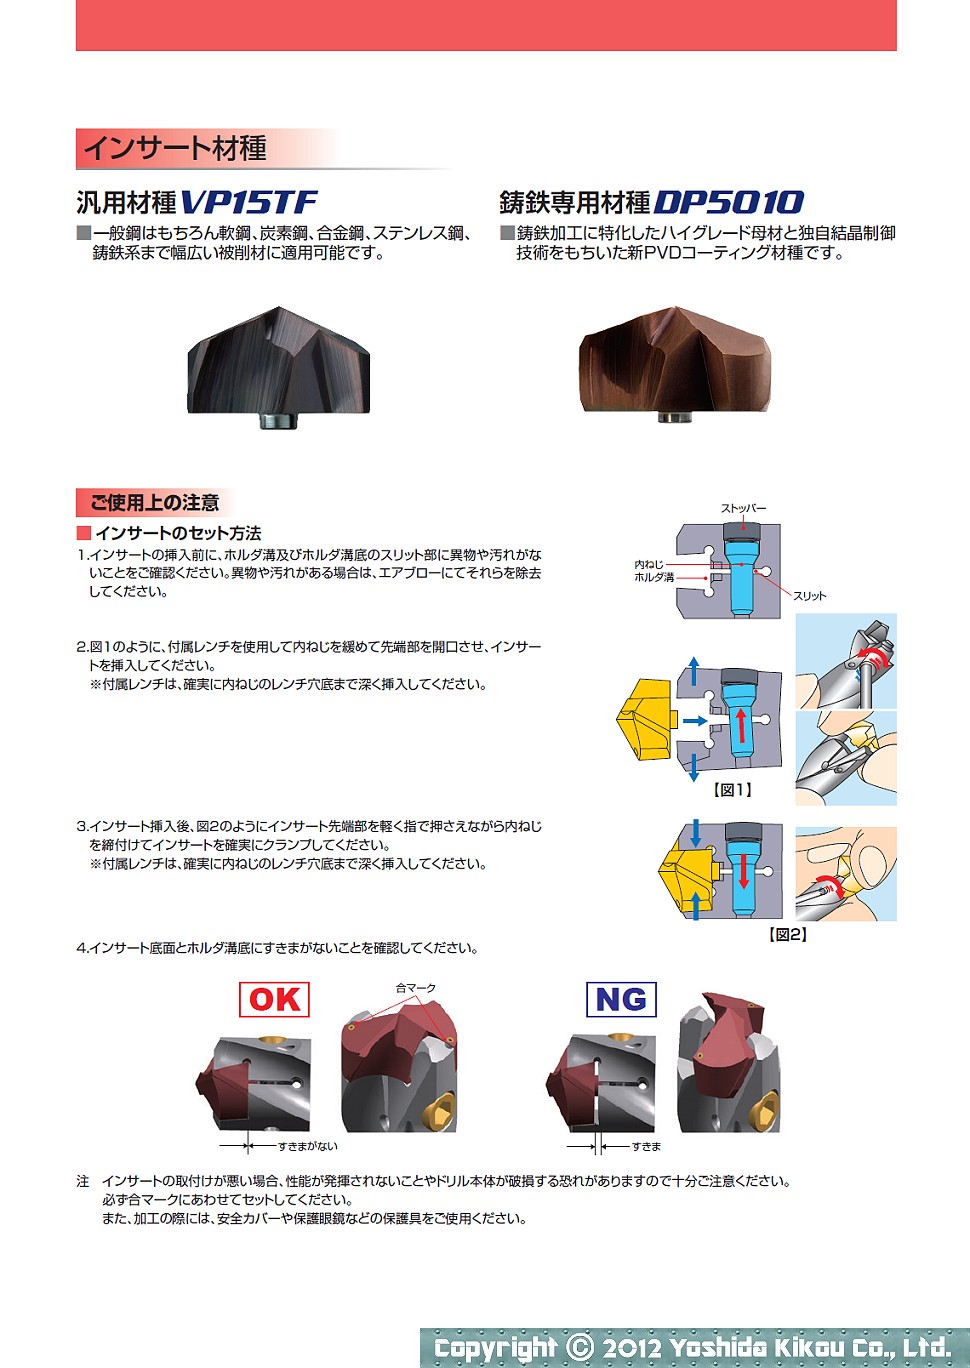 吉田機工株式会社 Yoshida Kikou Co.,Ltd. □ ヘッド交換式超硬ドリル